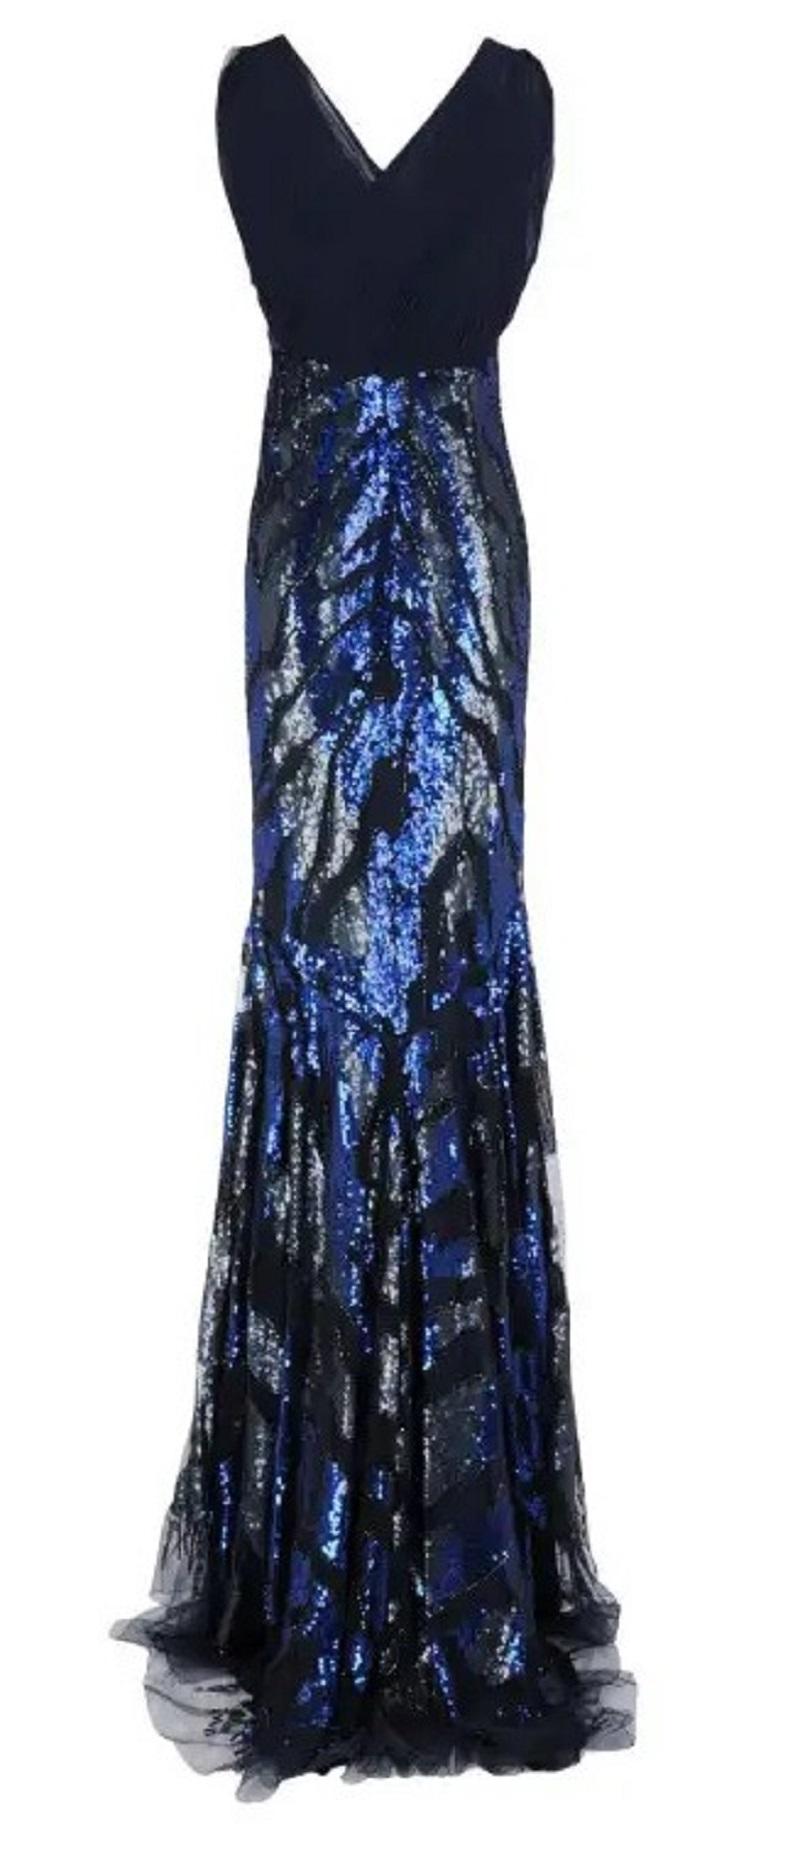 Roberto Cavalli Blue Gray Fully Embellished Zebra Print Dress Gown (robe à imprimé zébré)
Taille italienne 42, US 6.
Des paillettes bleues et grises sur le tulle noir, double doublure, fermeture à glissière, extensible.
Rosario Dawson a assisté à la